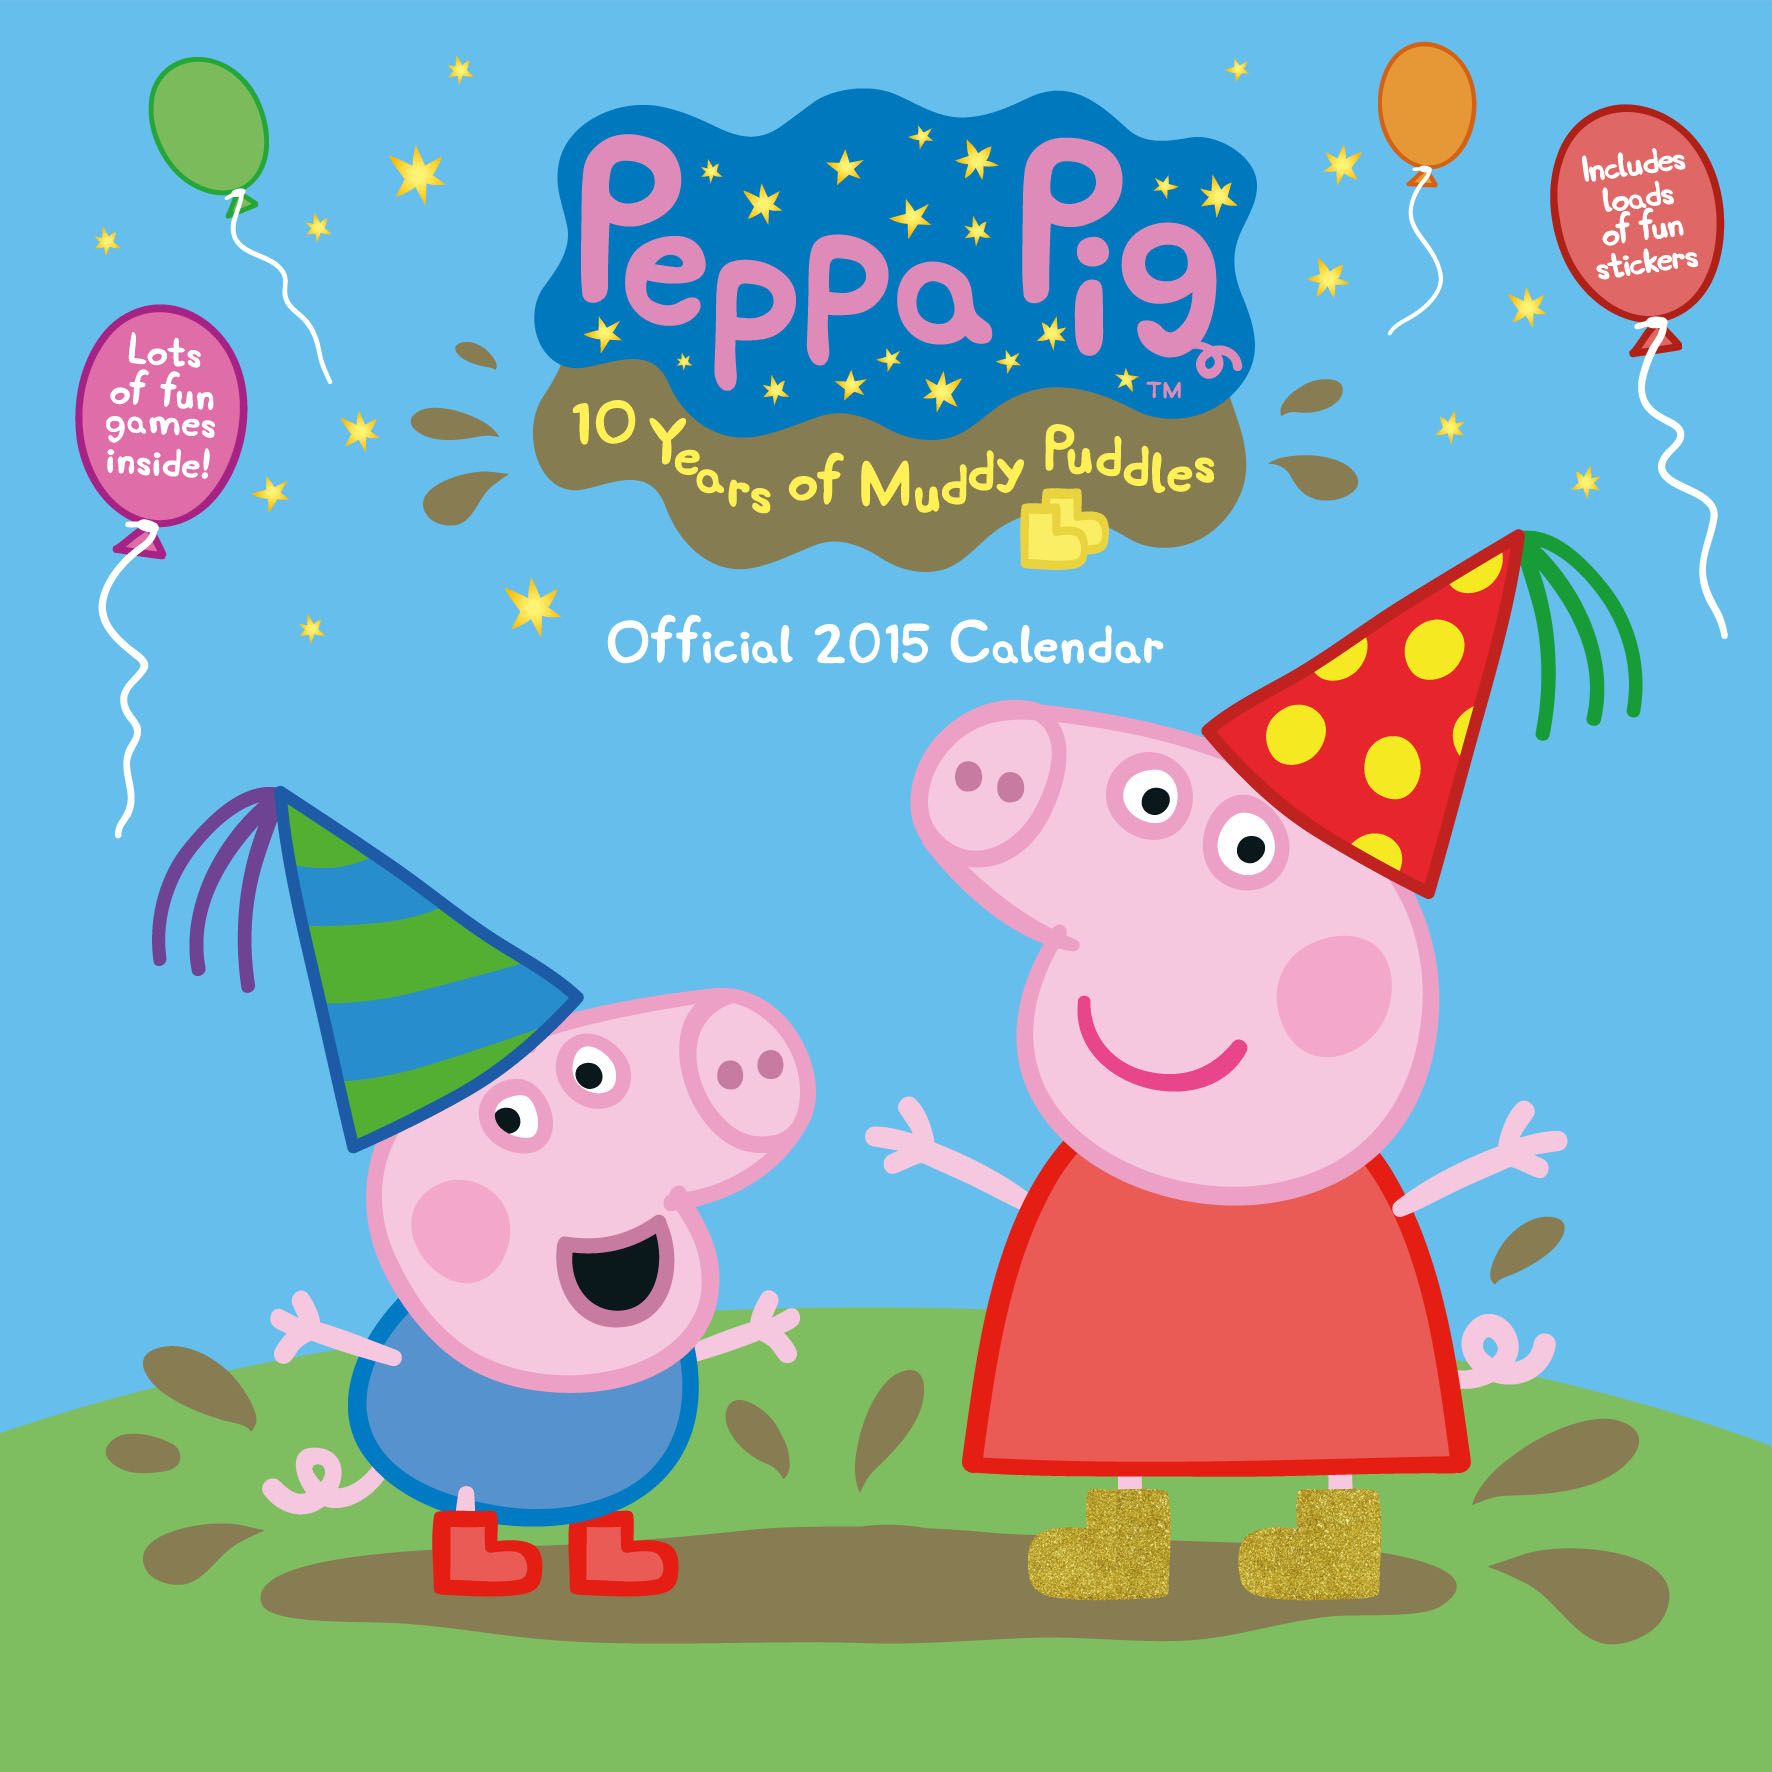 Peppa pig full hd wallpaper hdwidescreensm peppa pig background peppa pig peppa pig party